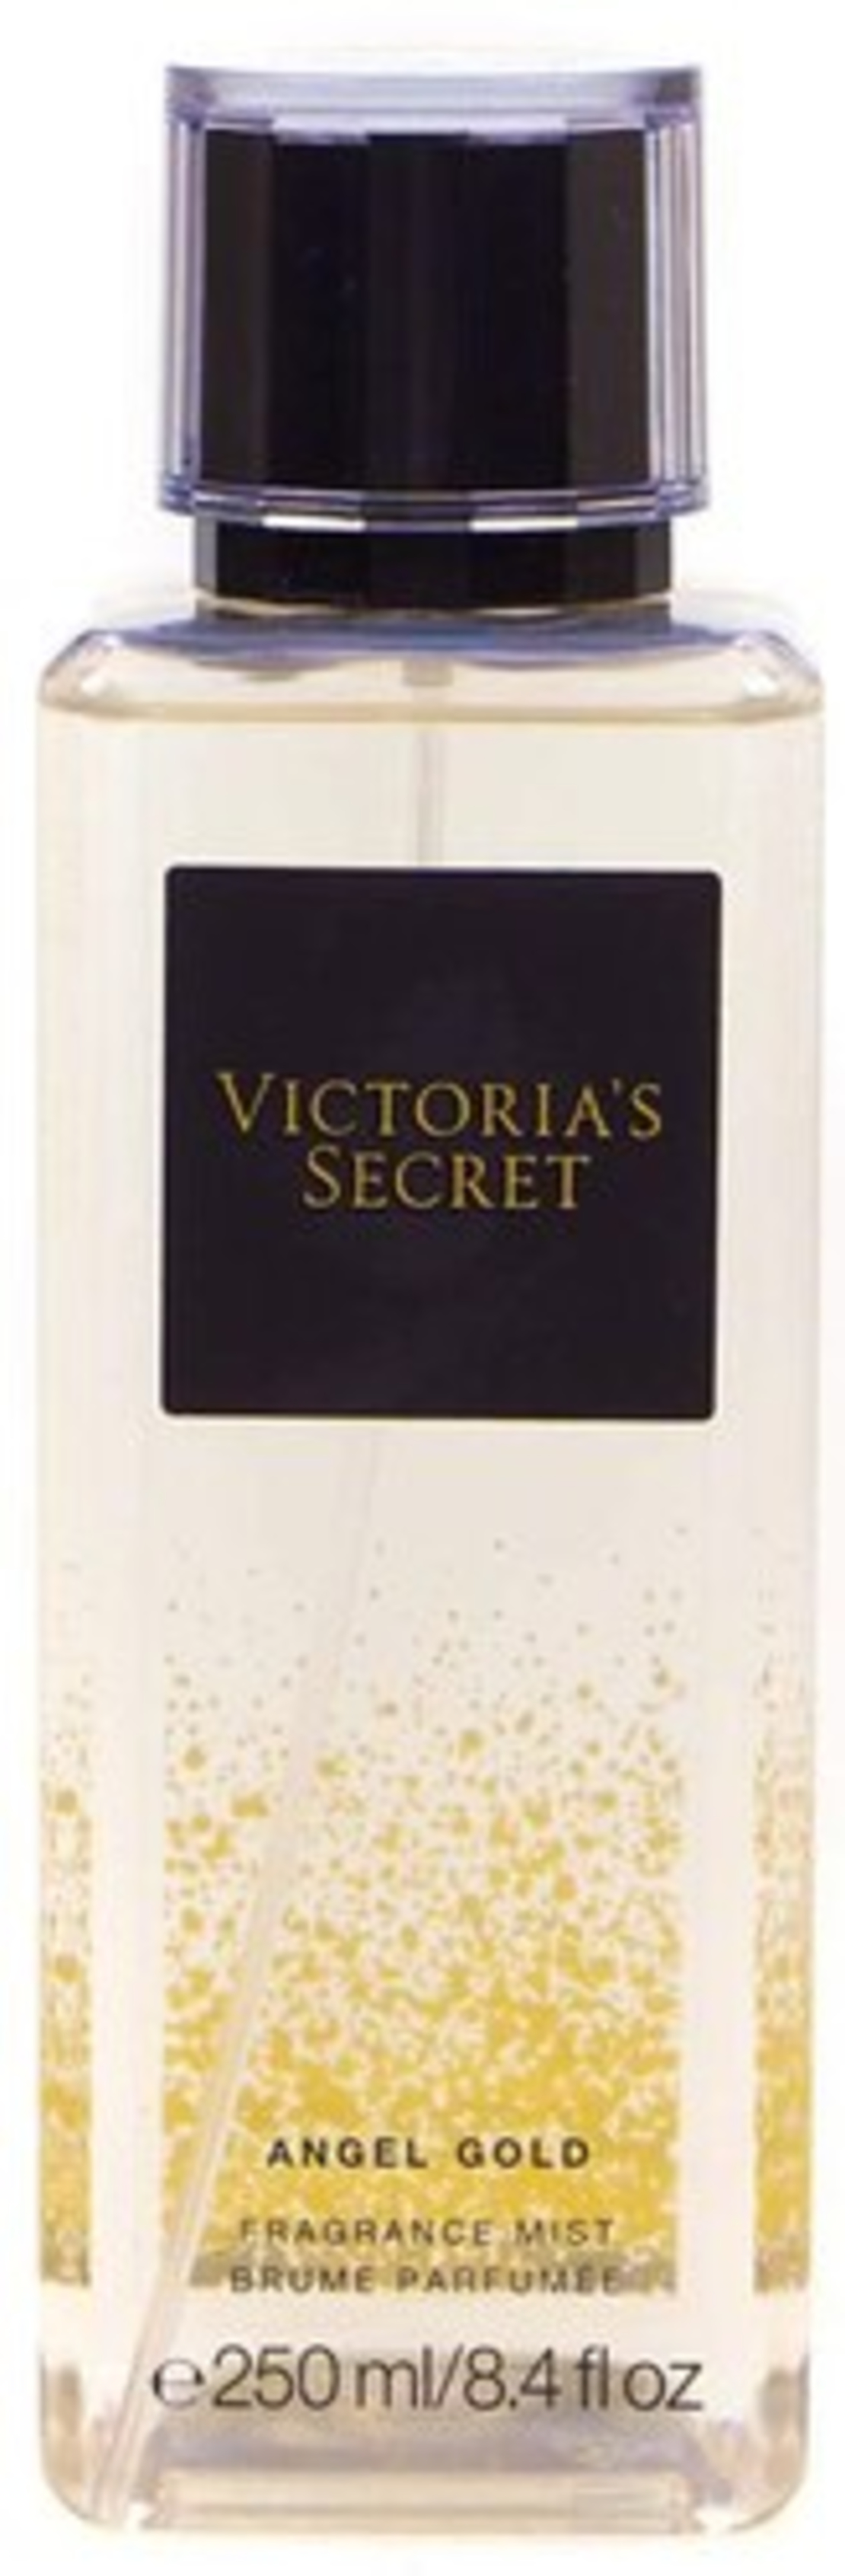 מיי גוף ספריי אנגל גולד ויקטוריה סיקרט – 250 מ'ל Victoria’s Secret Angel Gold Body Mist